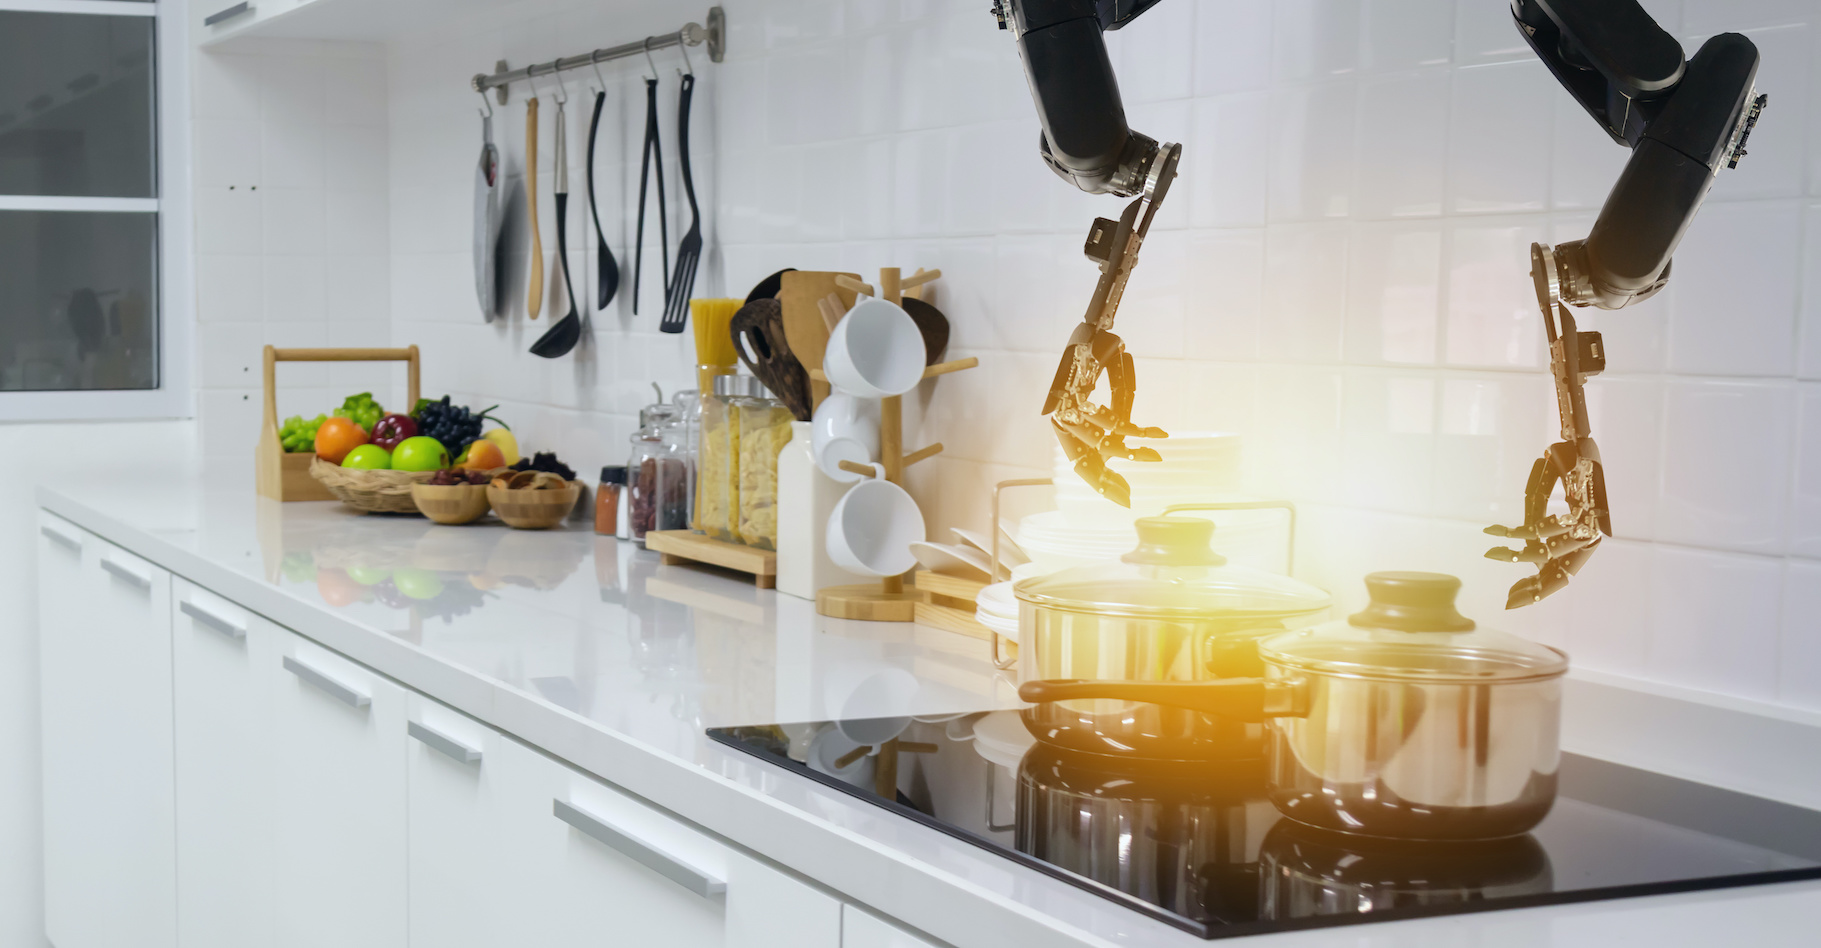 Les robots remplaceront-ils un jour les chefs humains dans les cuisines ? © Monopoly919, Adobe Stock